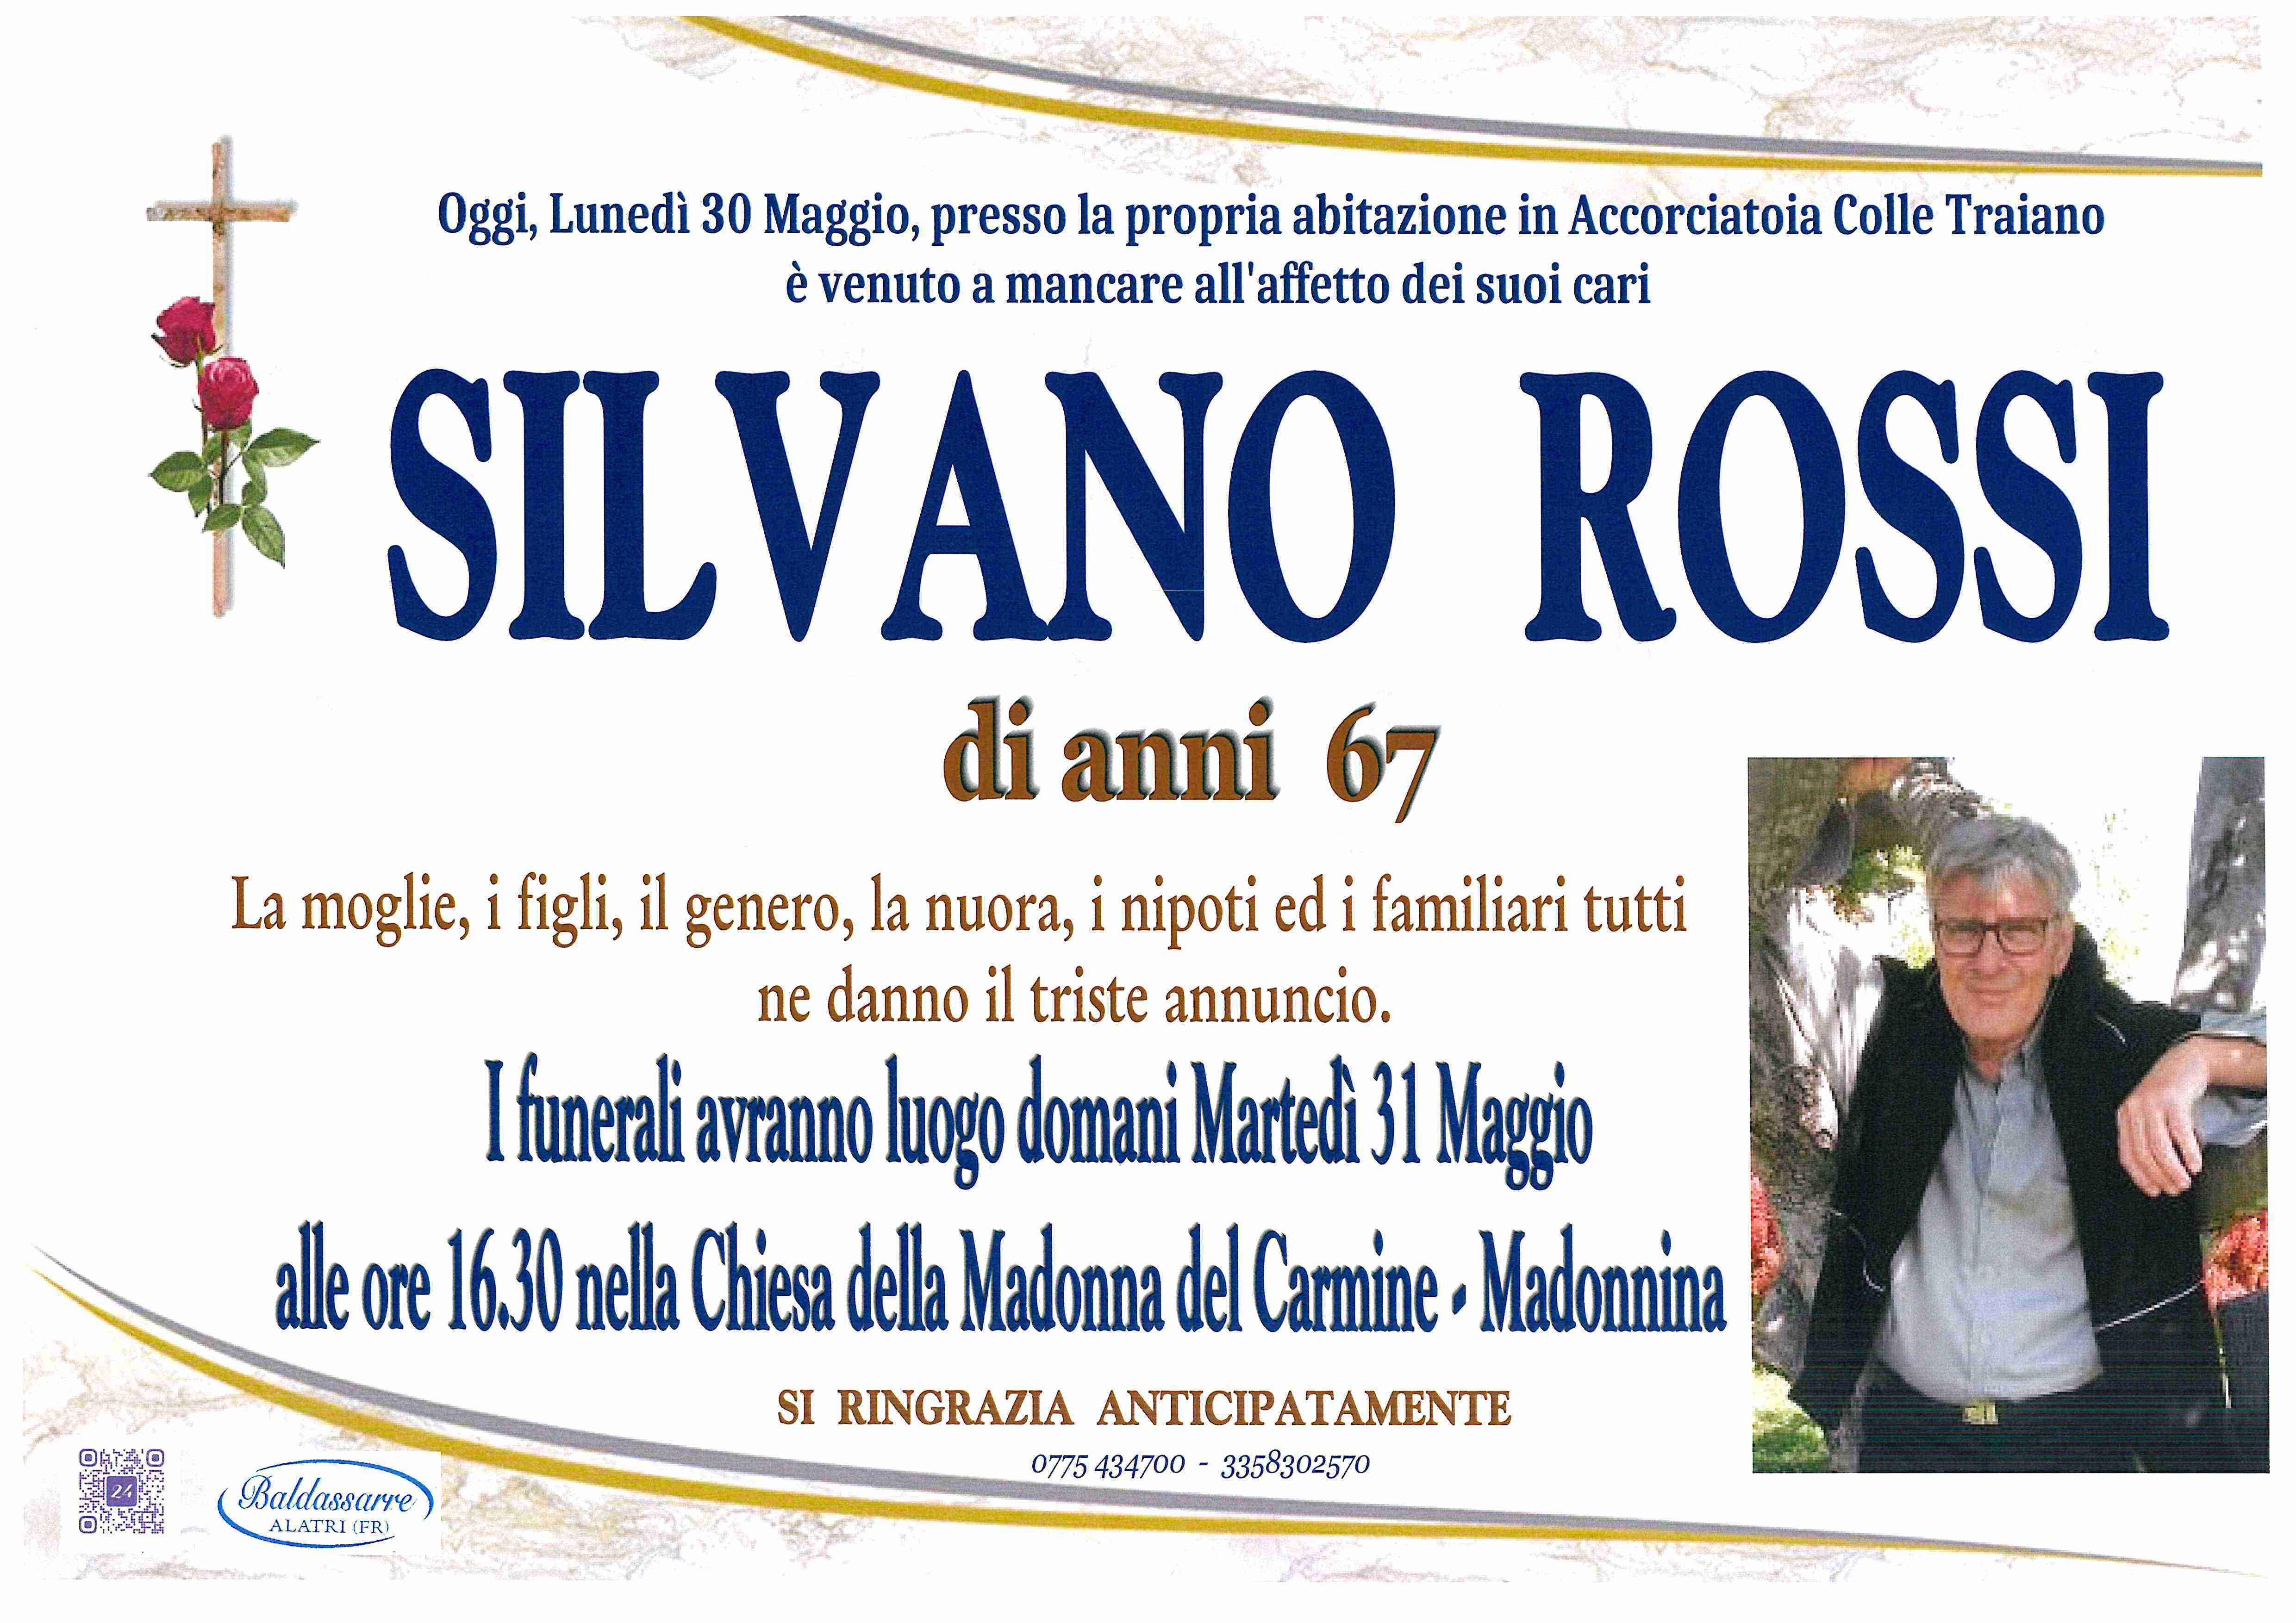 Silvano Rossi